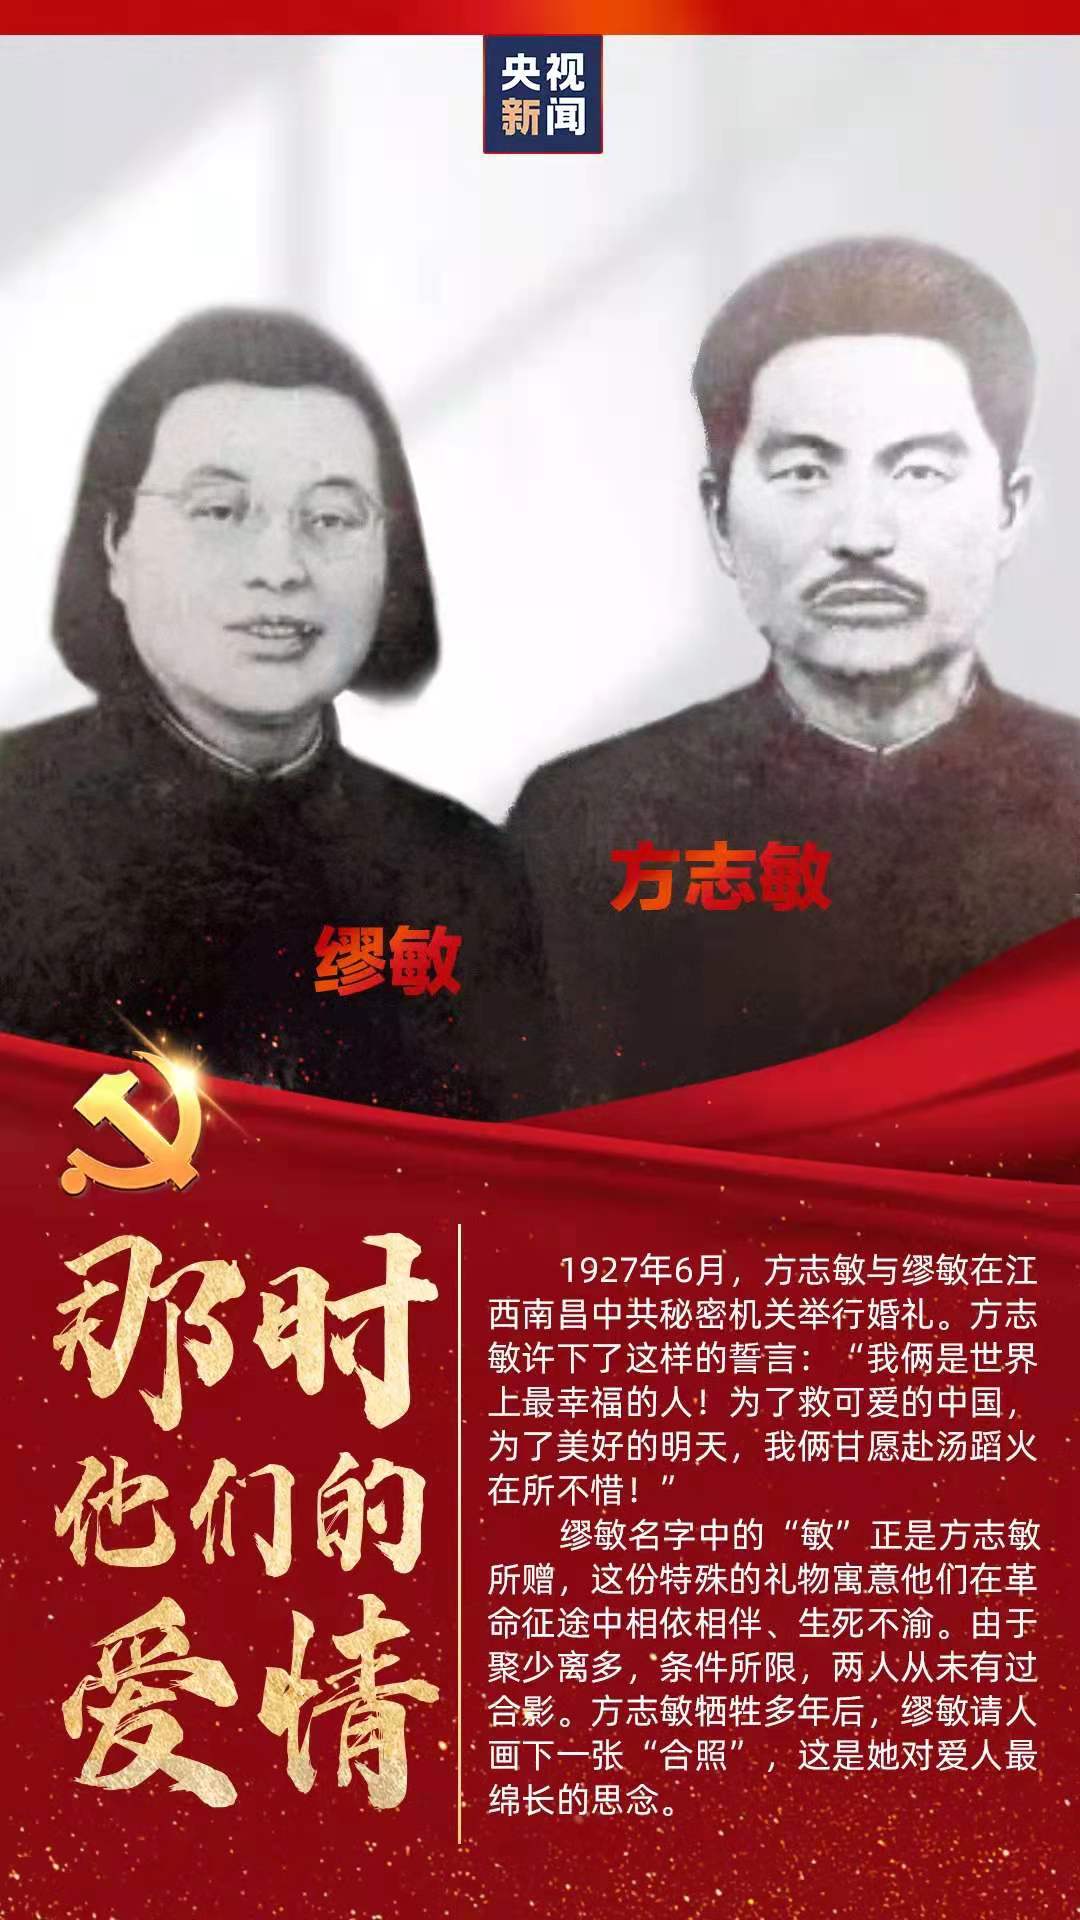 缪敏原名缪细与方志敏因共同的信仰结识1927年,二人在江西南昌中共